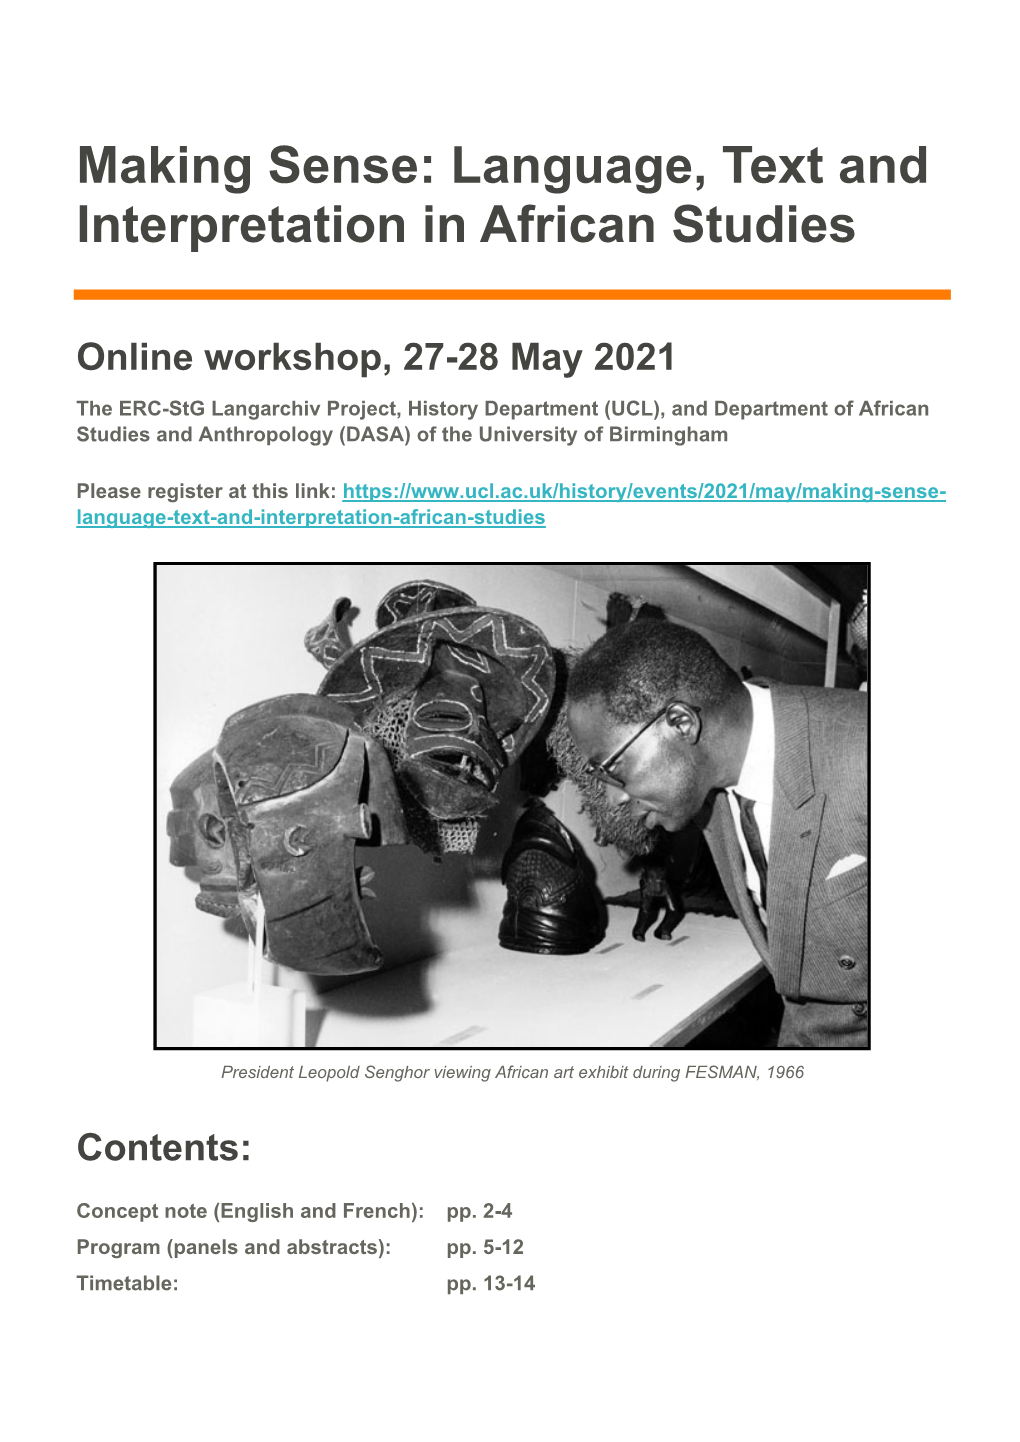 Making Sense: Language, Text and Interpretation in African Studies